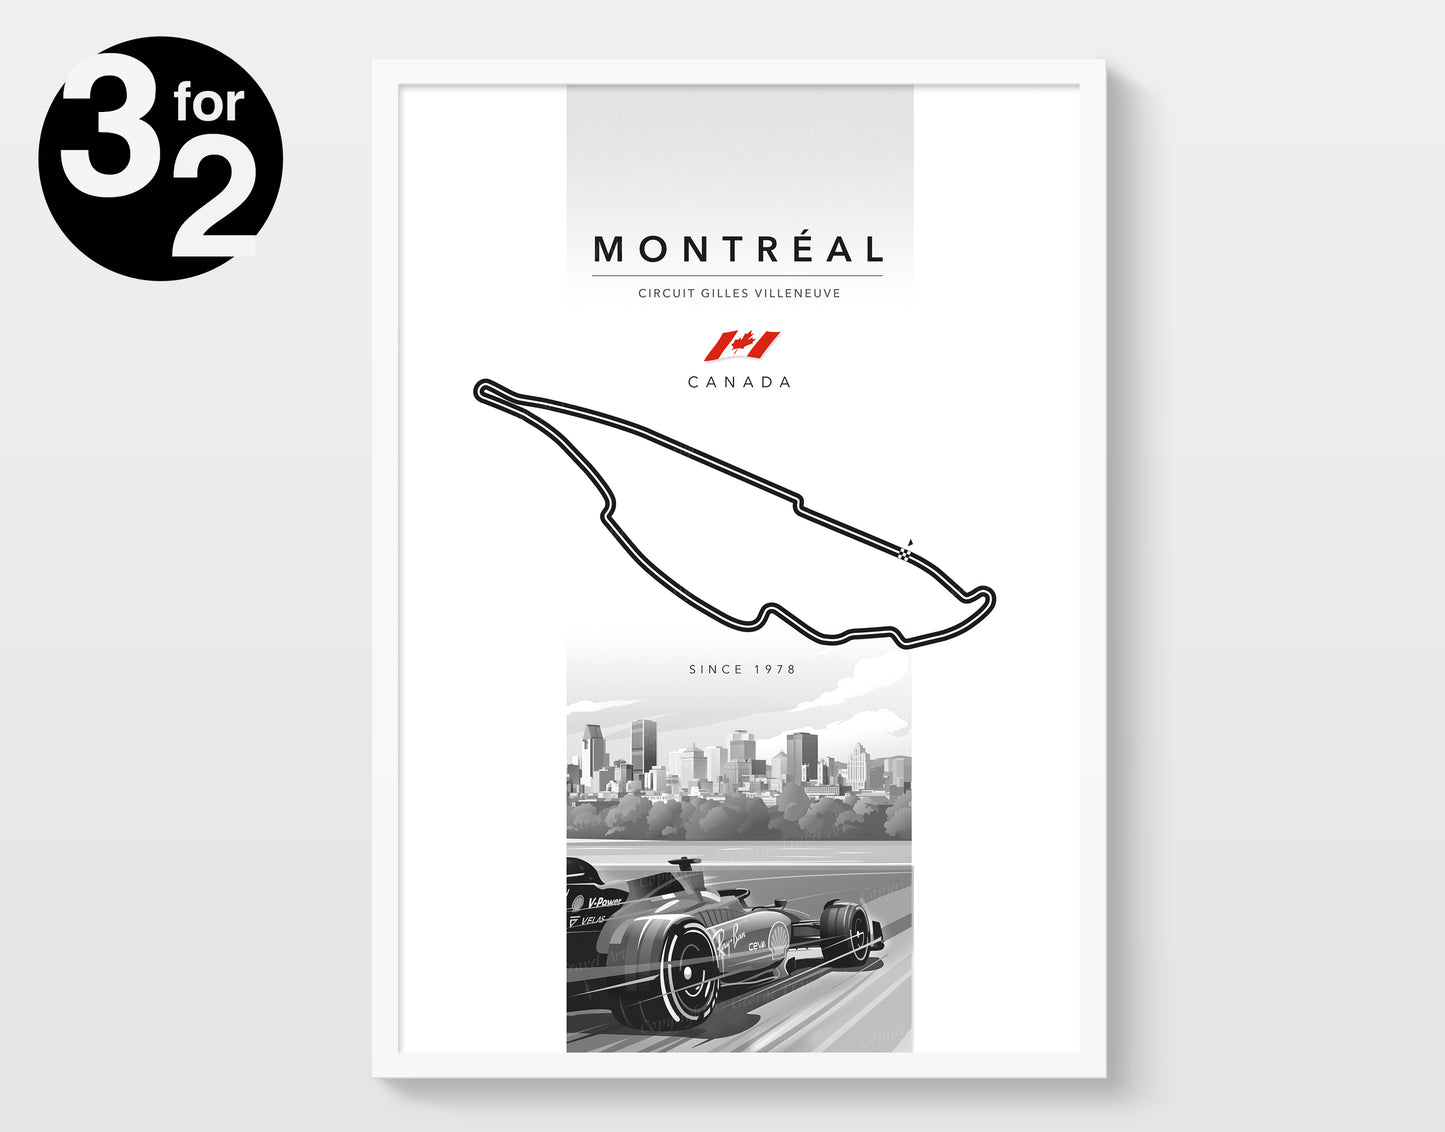 Montréal F1 Circuit Poster / Circuit Gilles Villeneuve / Canadian Grand Prix